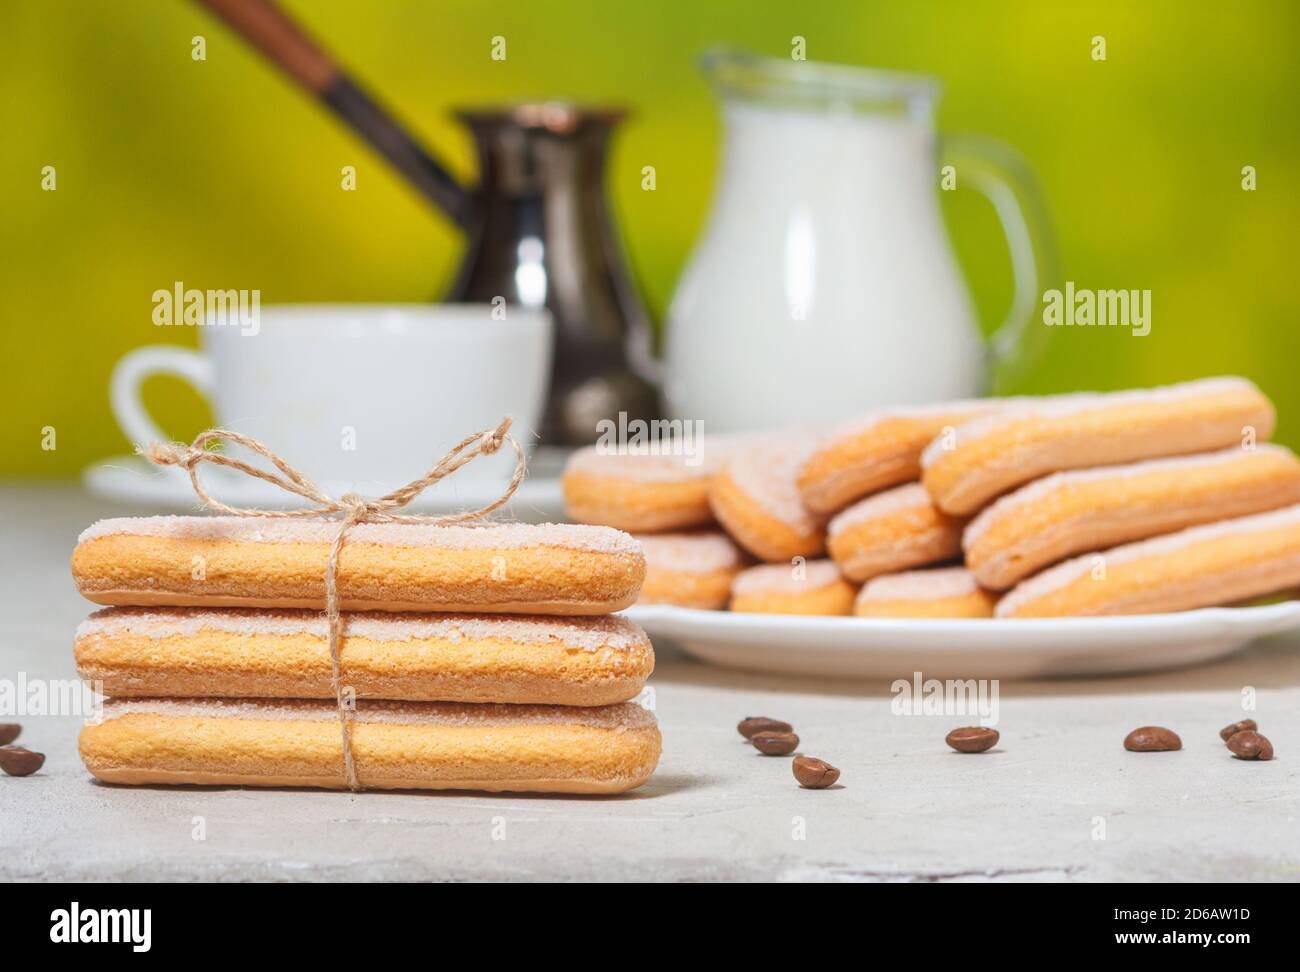 Biscotti savoiardi italiani o biscotti ladybugs su un piatto e legati con una corda, una tazza bianca di caffè e una brocca di latte sullo sfondo. Selectiv Foto Stock